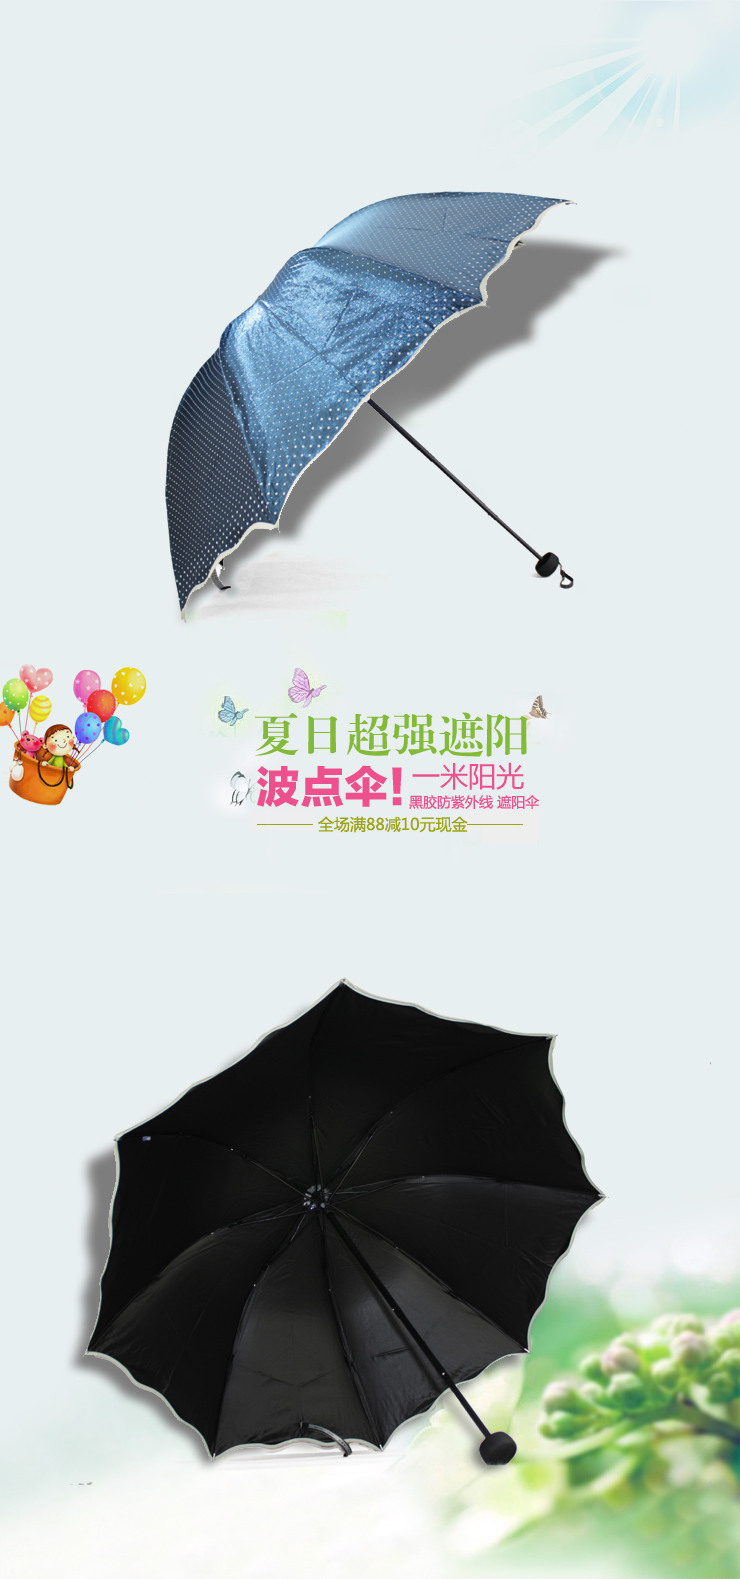 黑胶伞防紫外线遮阳伞女三折网上购物折扣价格与评价  遮阳伞和雨伞有